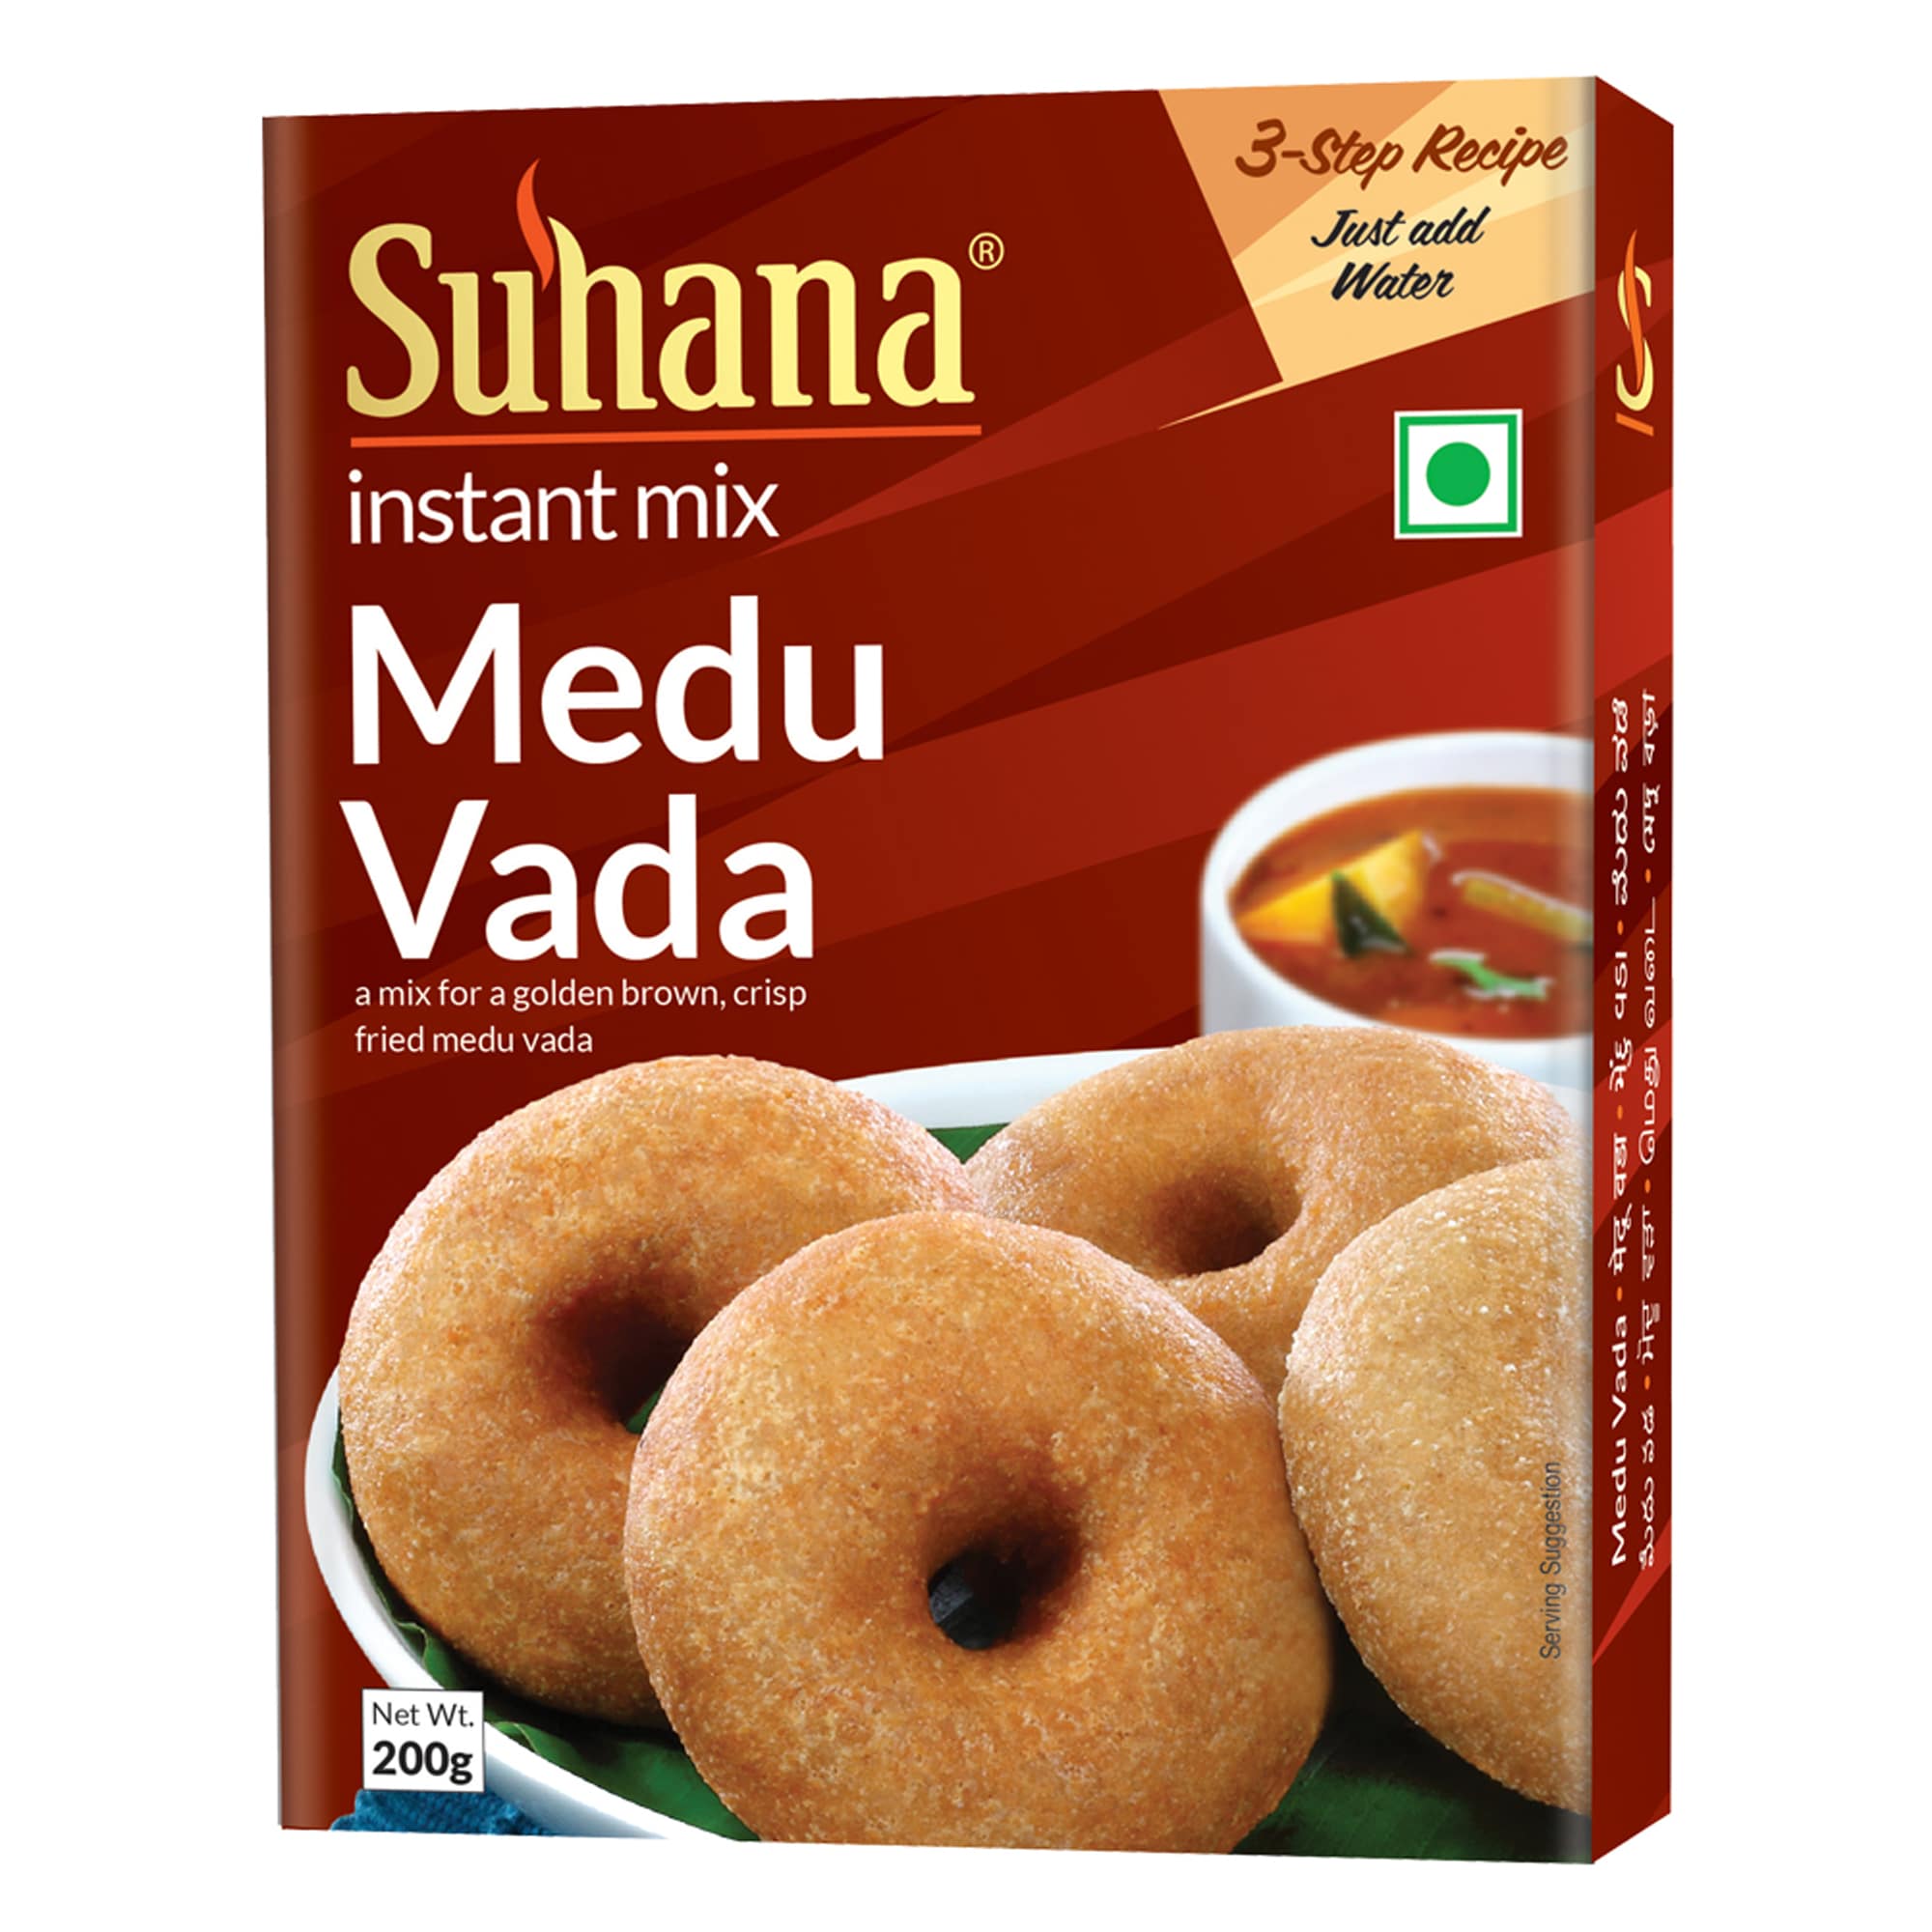 Suhana Medu Vada Mix 200g Box